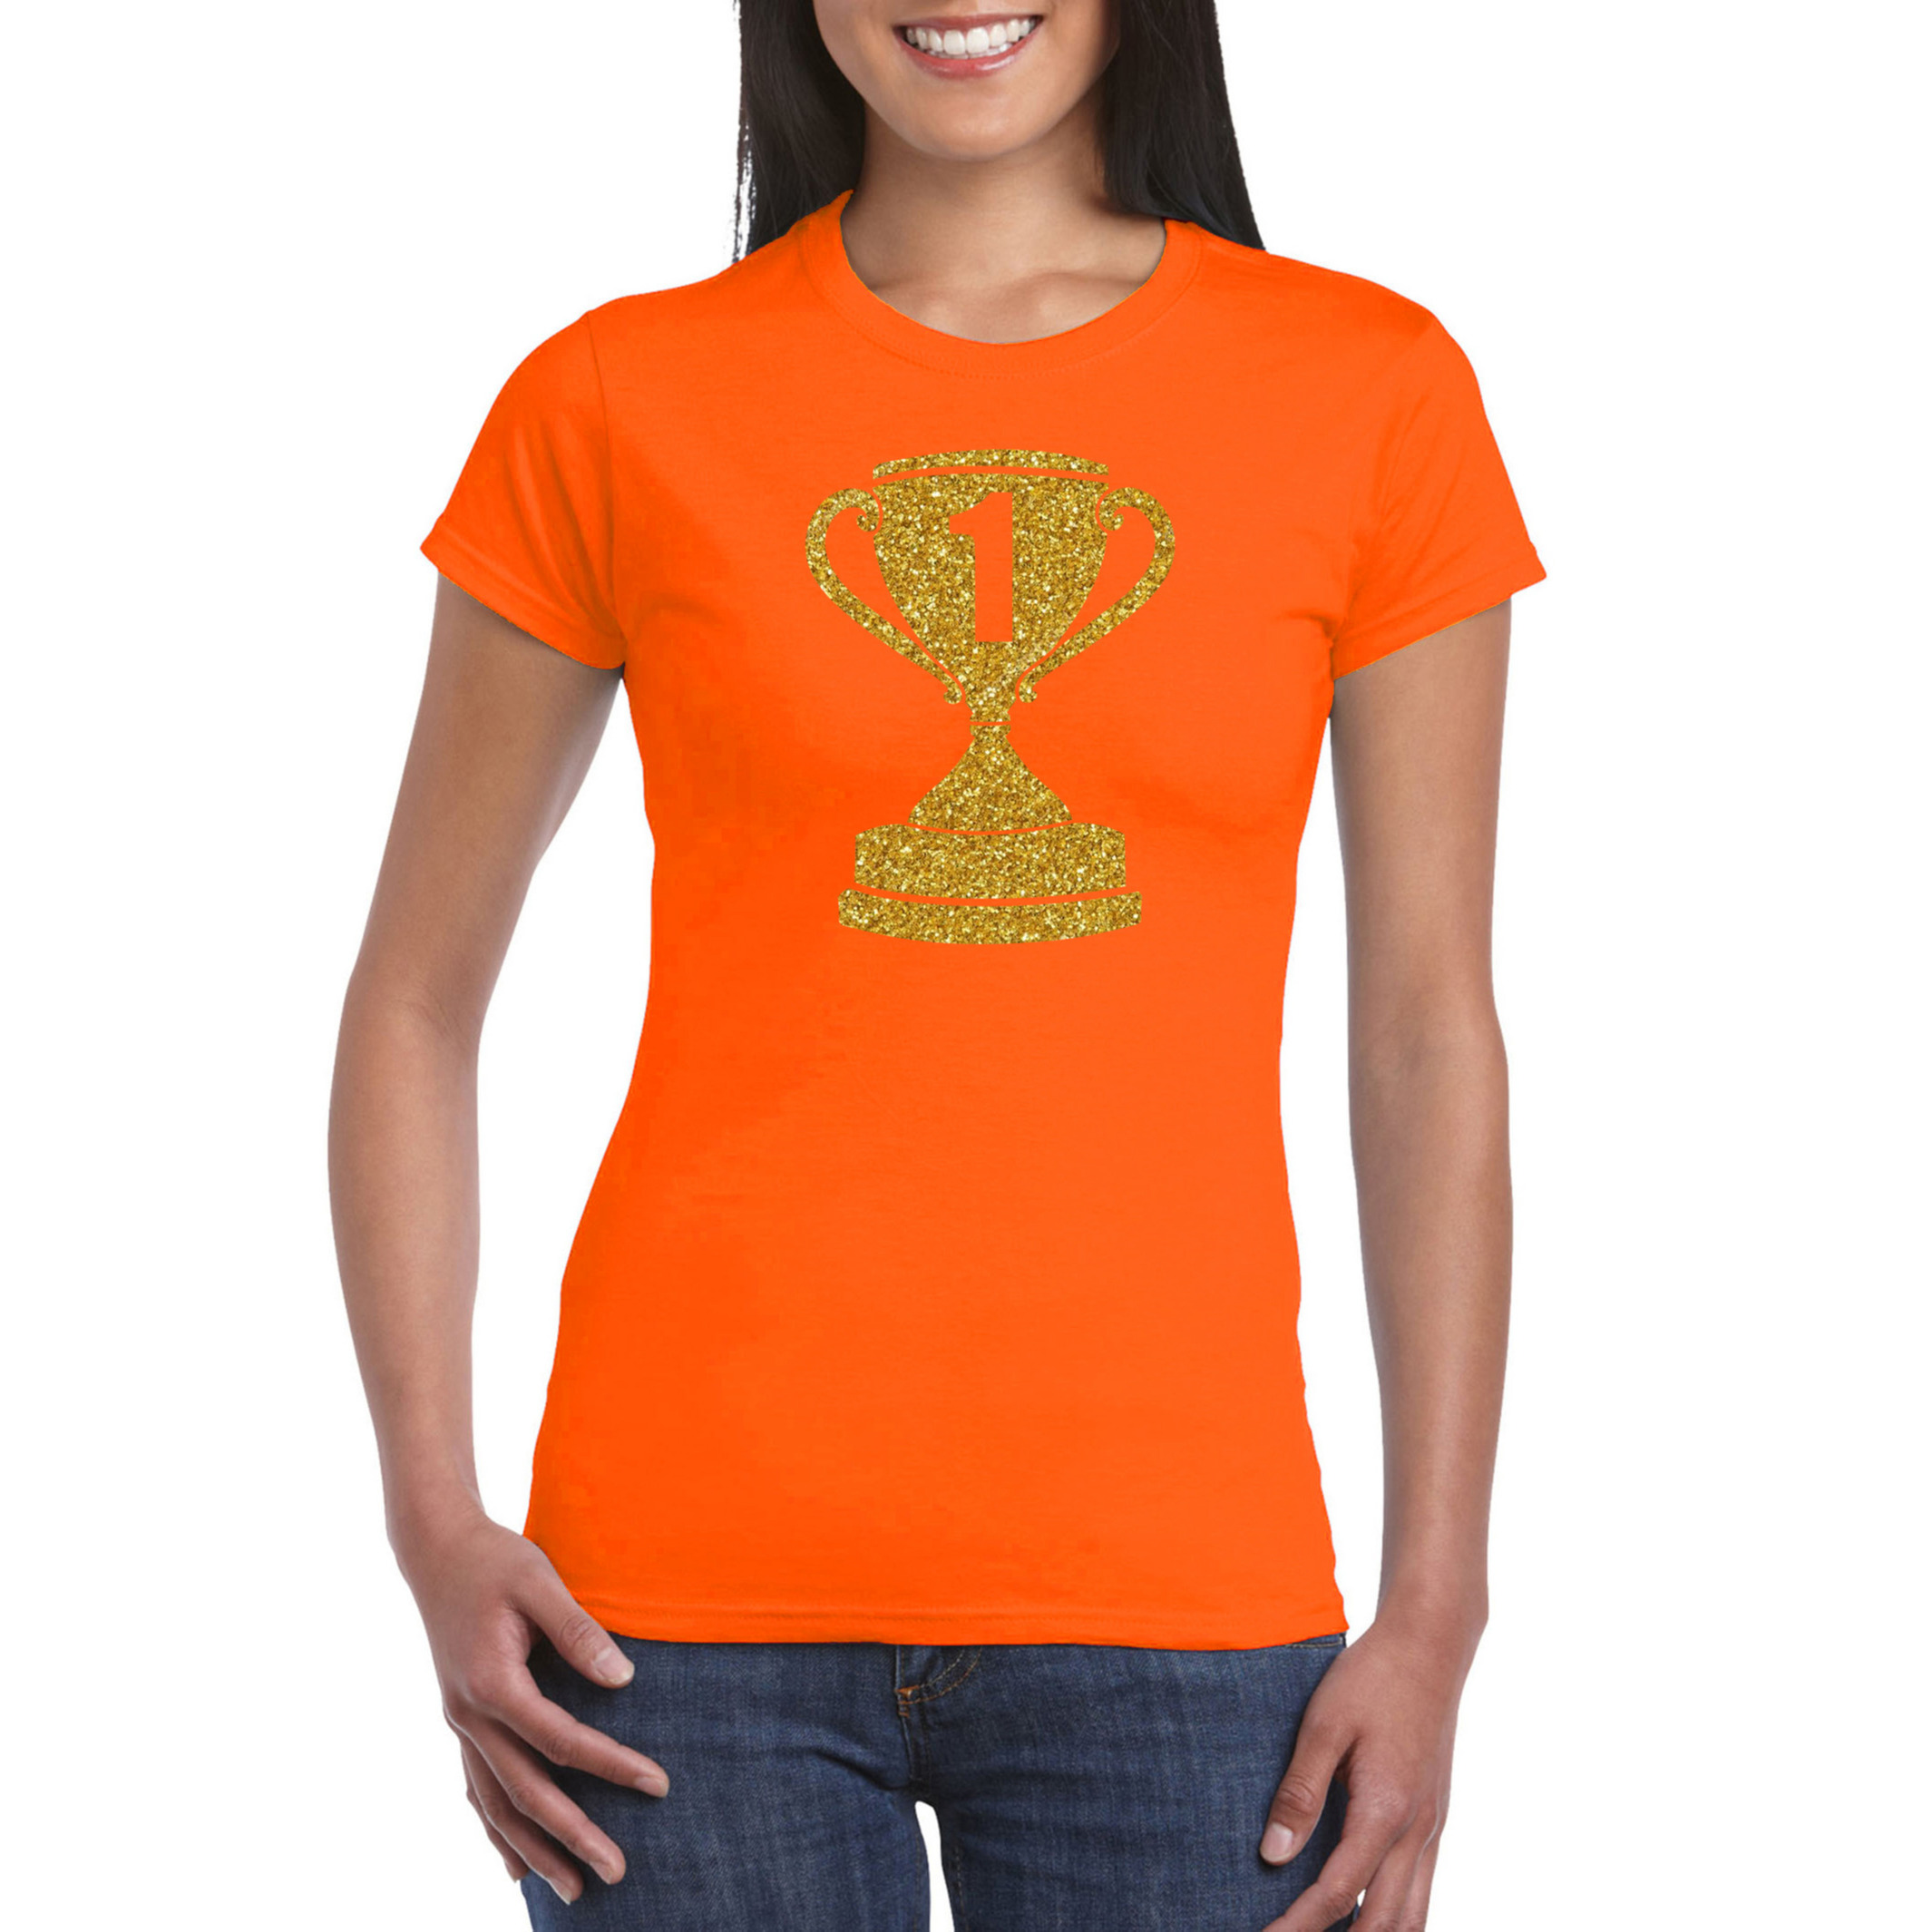 Gouden kampioens beker-nummer 1 t-shirt-kleding oranje dames